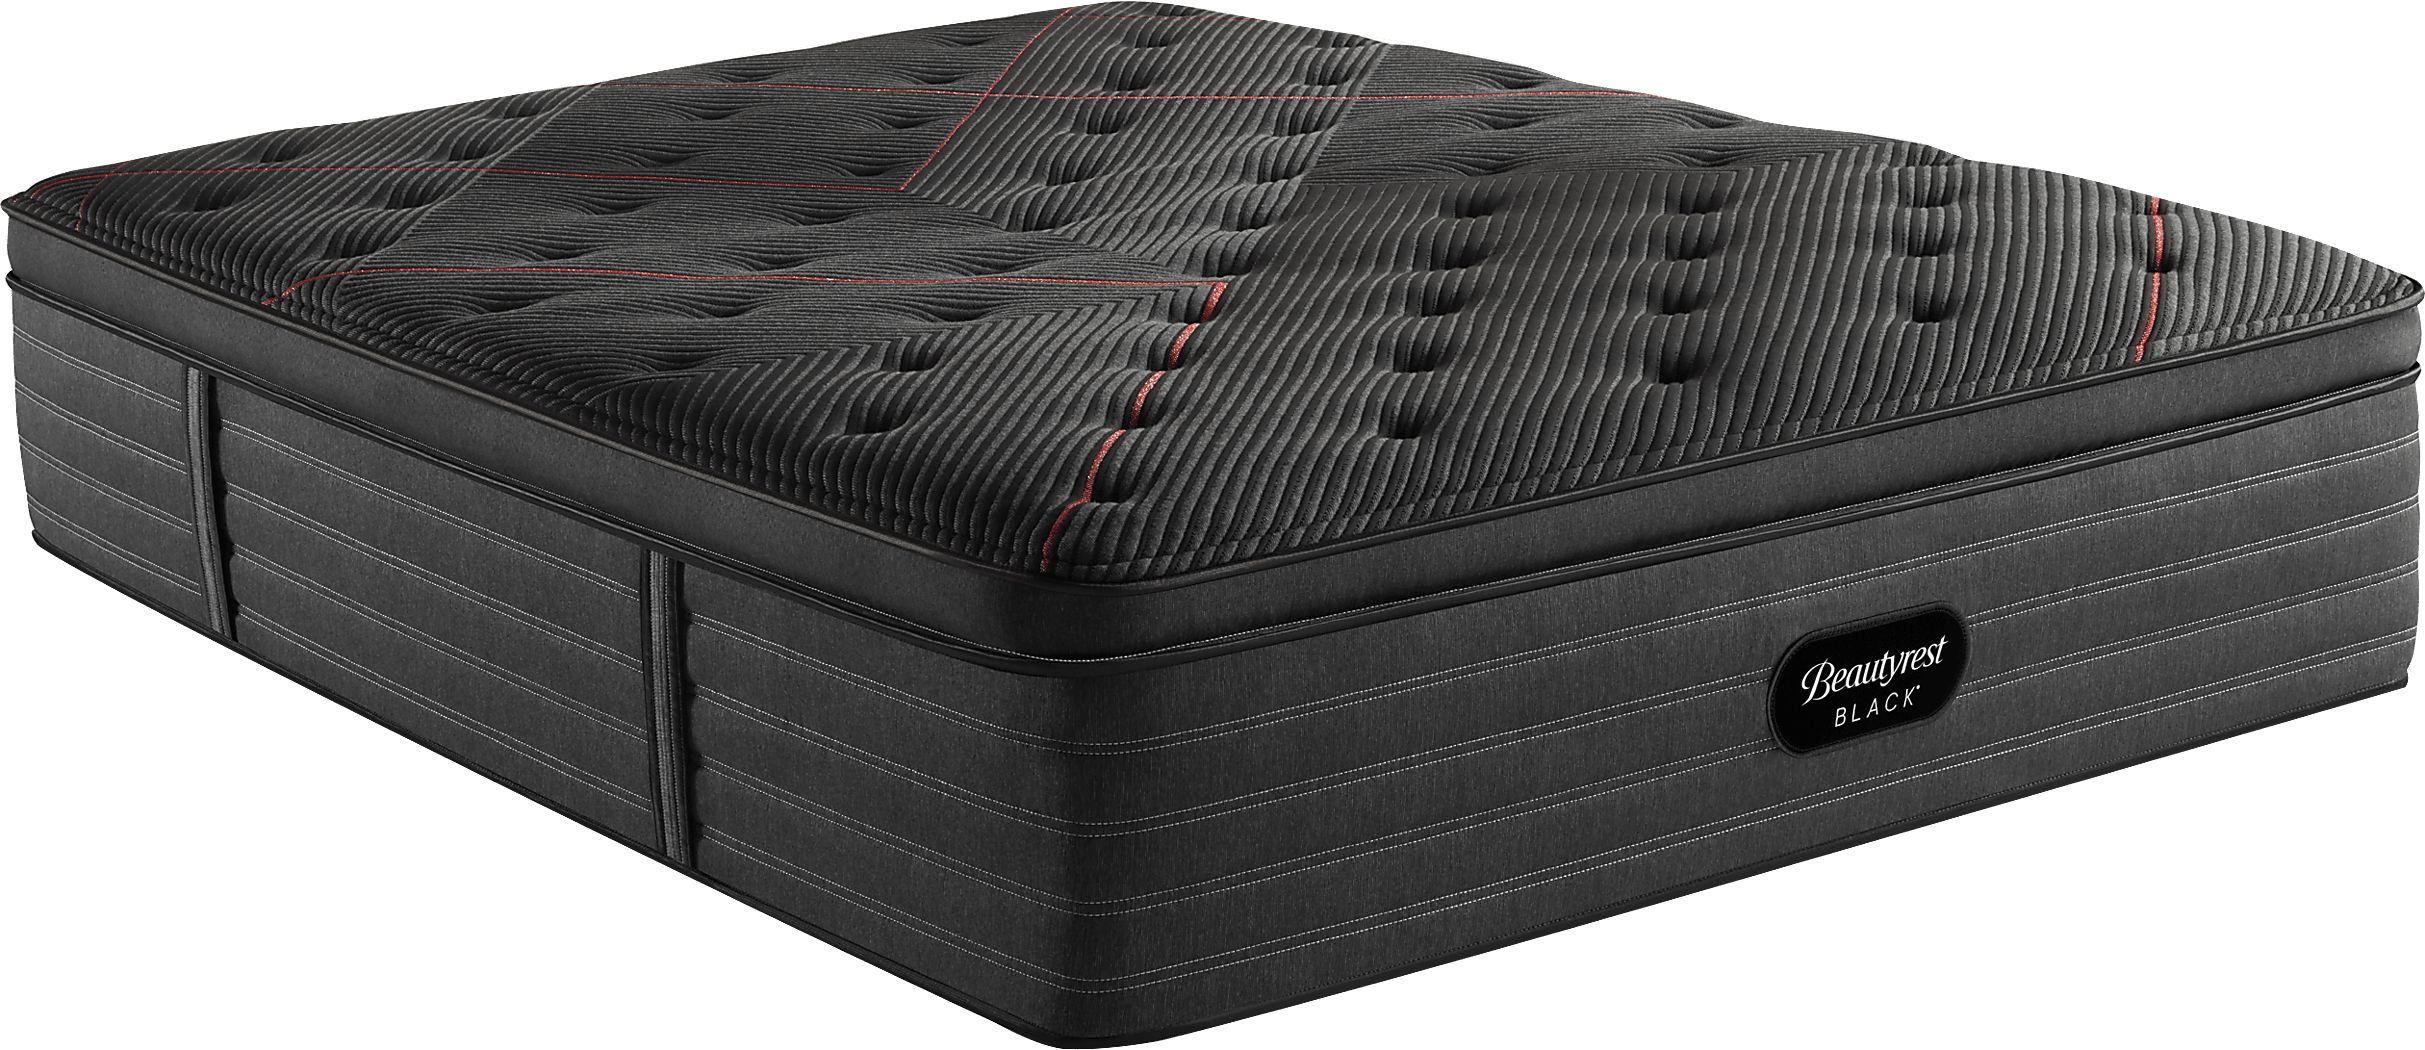 beautyrest plush pillow top queen mattress set